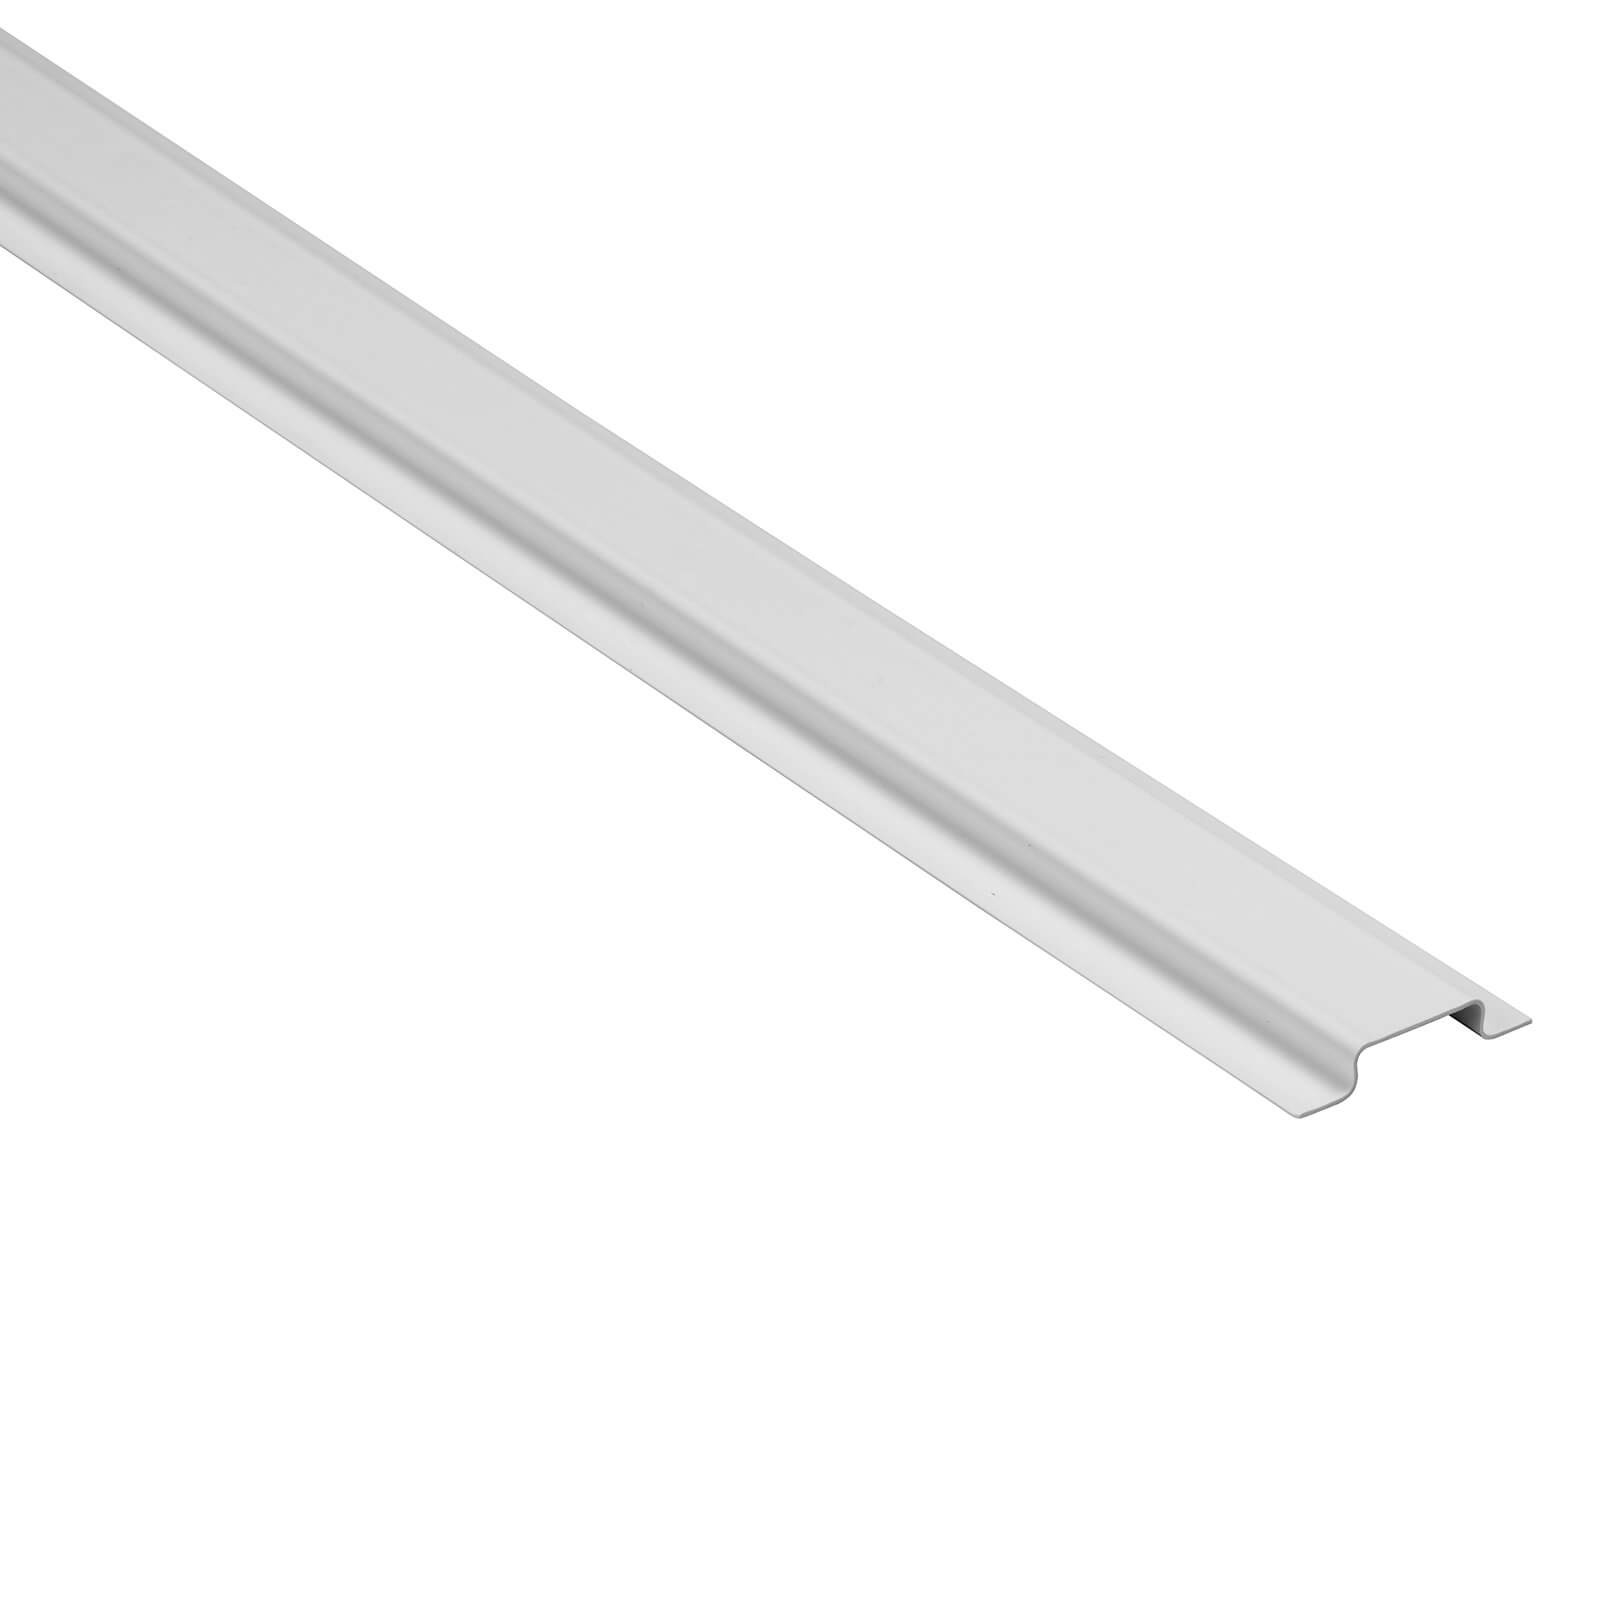 D-Line PVC Channel - 2m Length - White